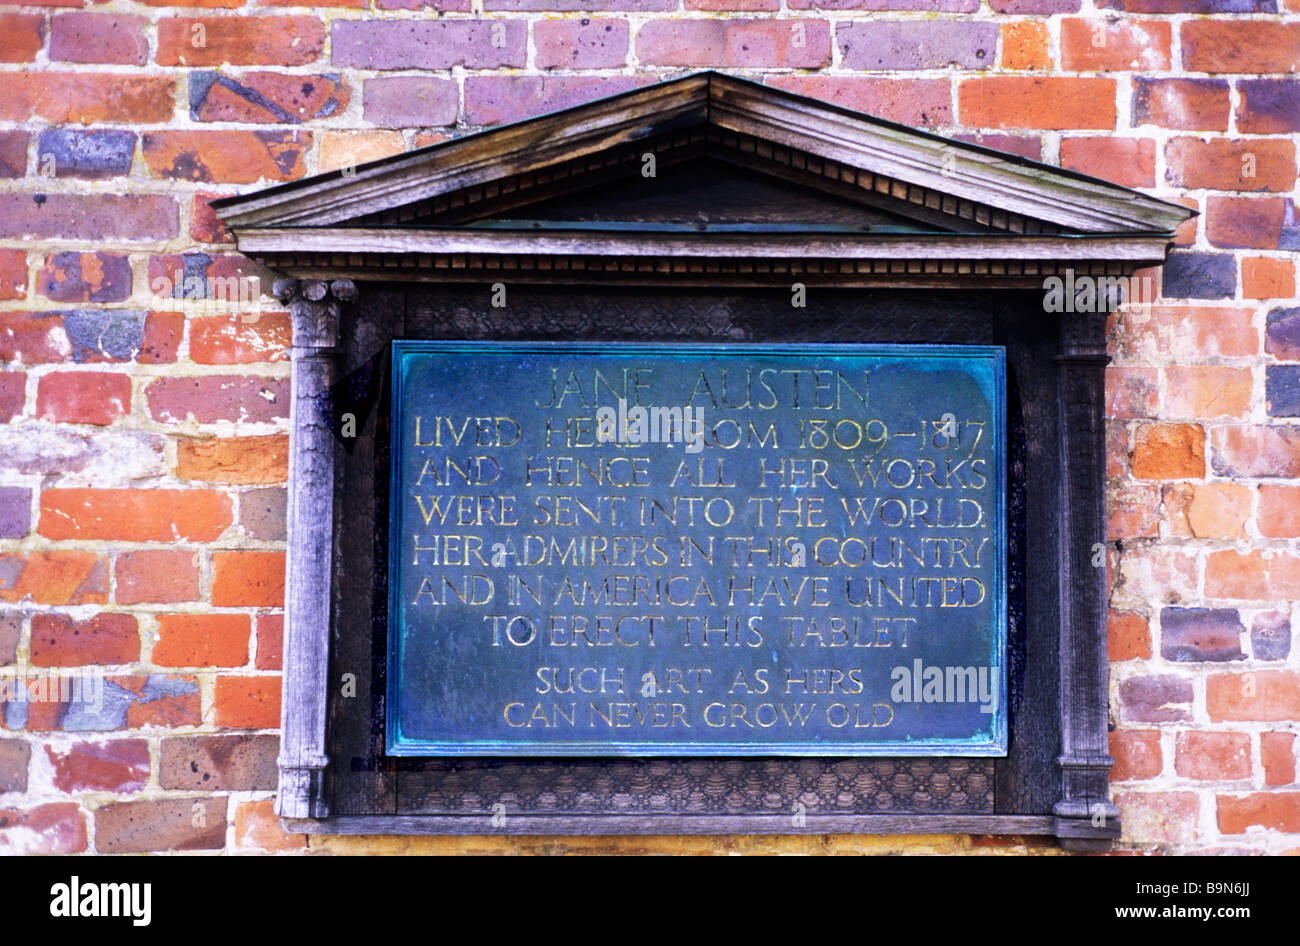 Informazioni tablet di placca su Jane Austen's Austen House Chawton Hampshire REGNO UNITO Inghilterra romanziere inglese autore del XIX secolo Foto Stock